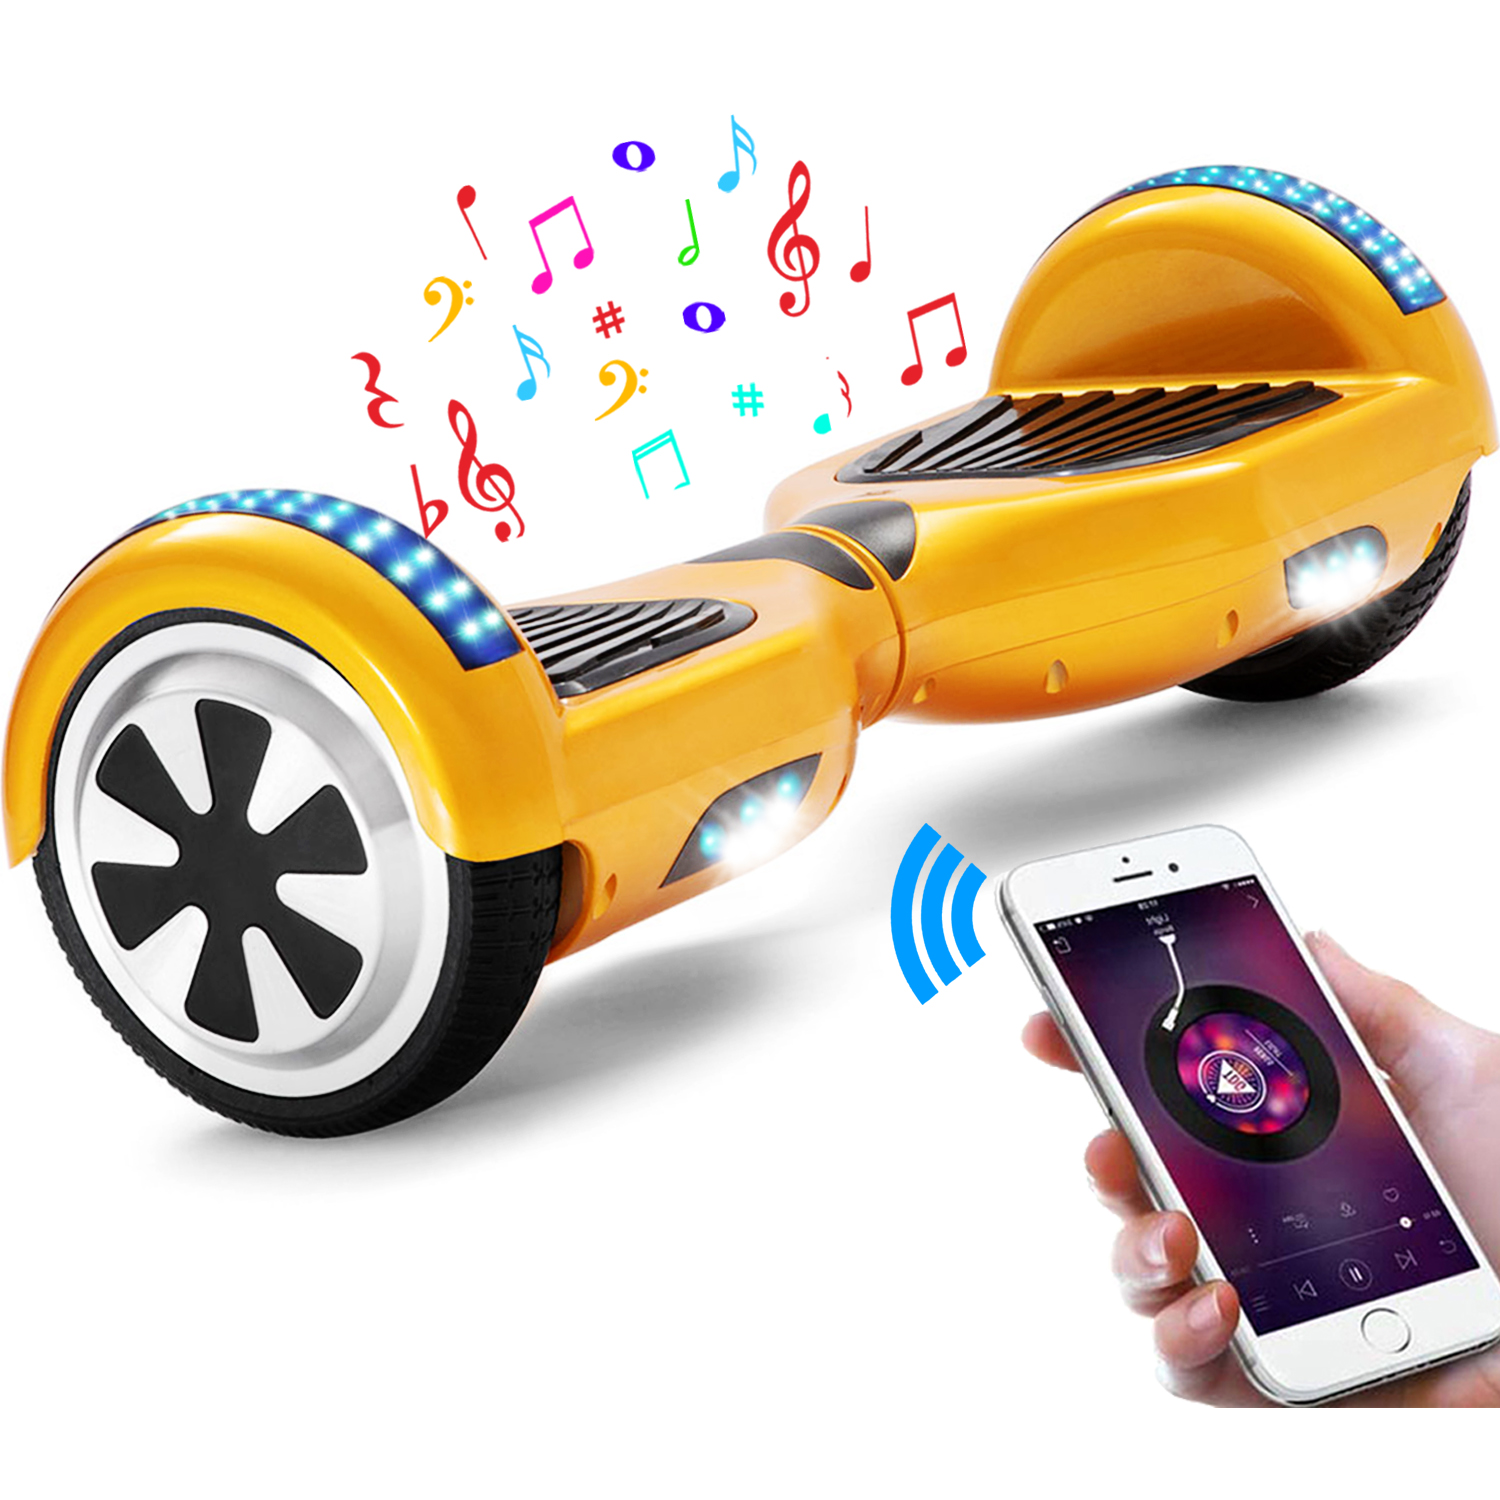 Neues 6,5" Hoverboard gold mit Bluetooth Musik Lautsprecher und LED Licht - 500W 12km/h